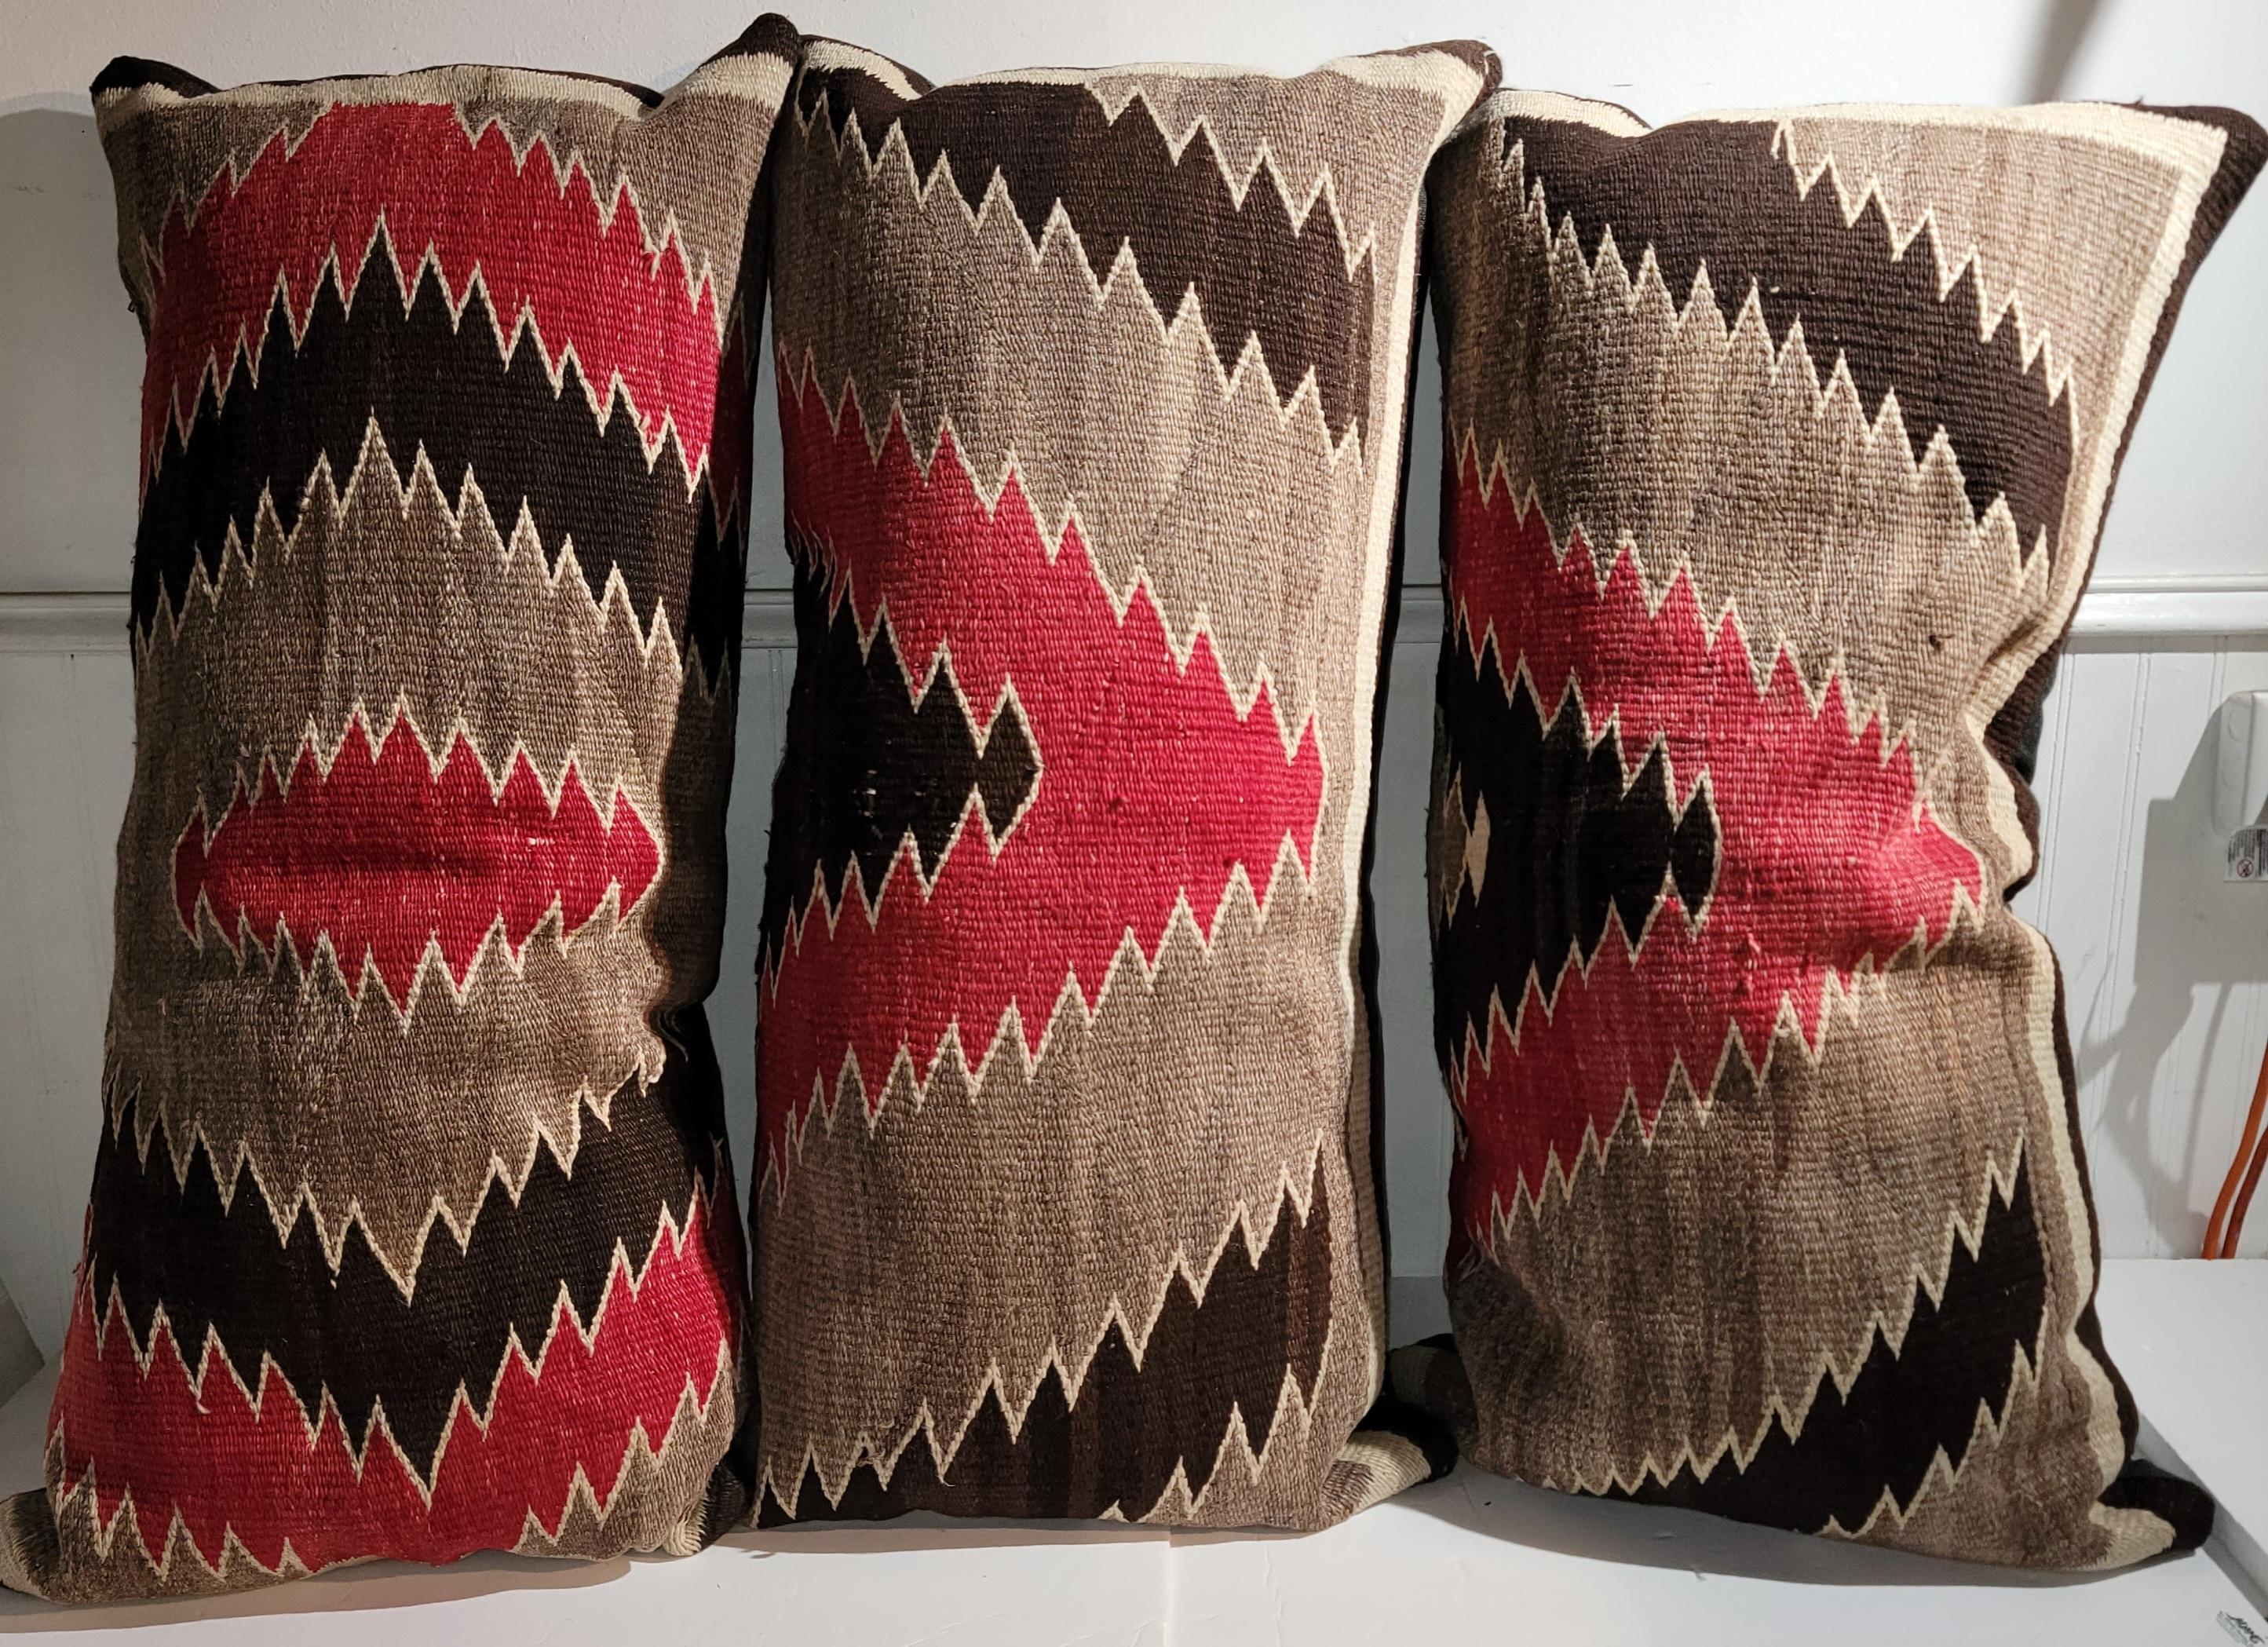 Collection de trois coussins de traversin géométriques en tissage indien Navajo. Les dossiers sont en lin de coton brun et garnis de duvet et de plumes.
Les trois oreillers ont les mêmes dimensions. Vendu comme une collection.